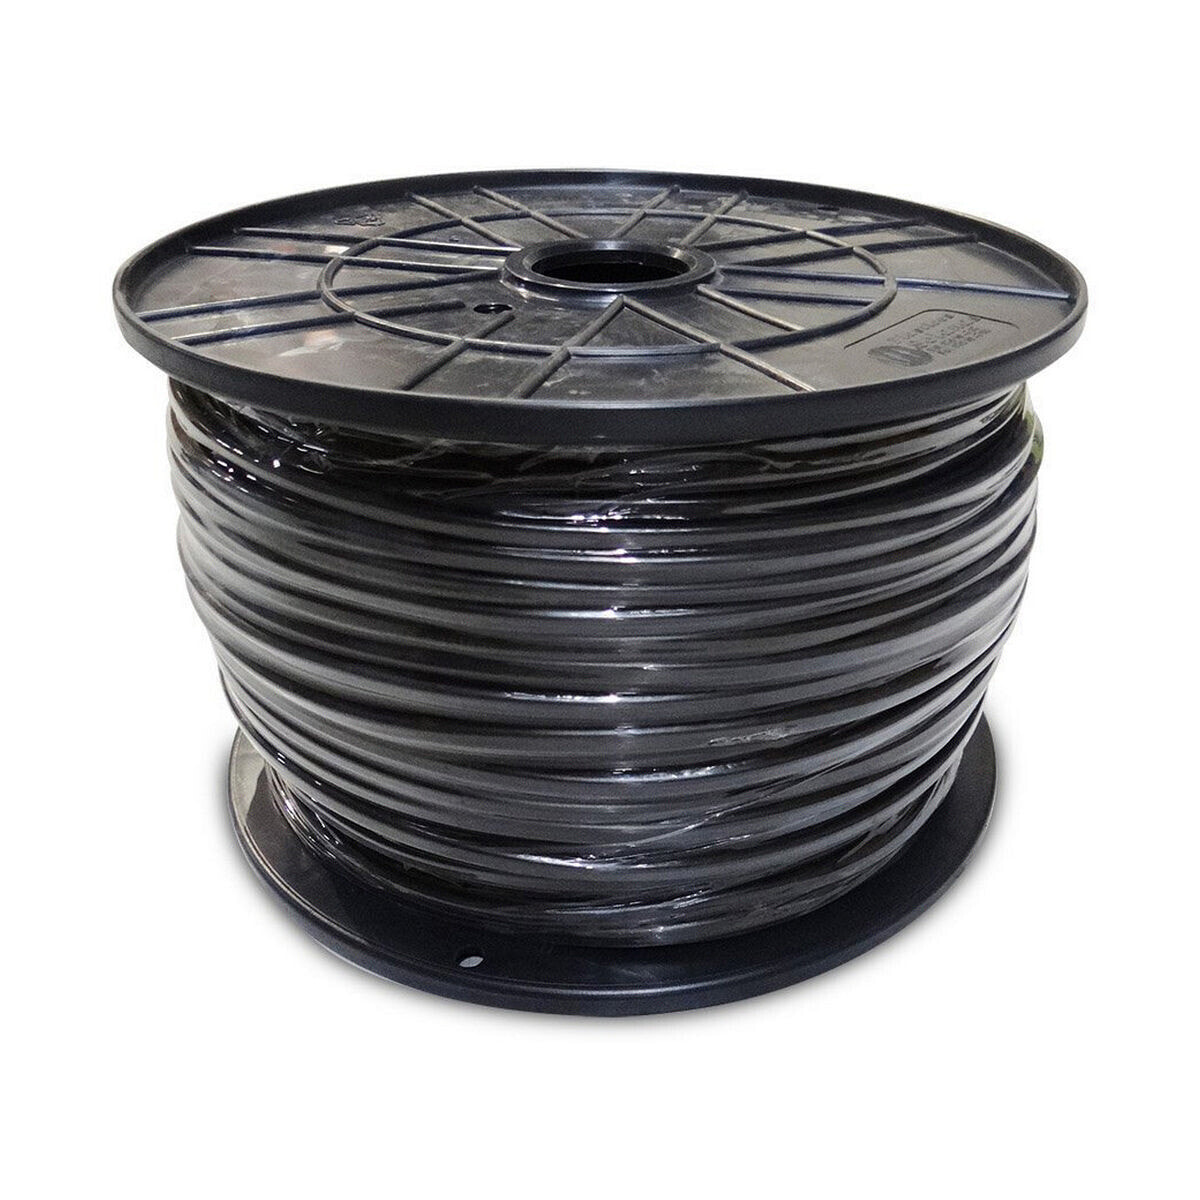 Cable Sediles 3 x 1 mm Black 300 m Ø 400 x 200 mm